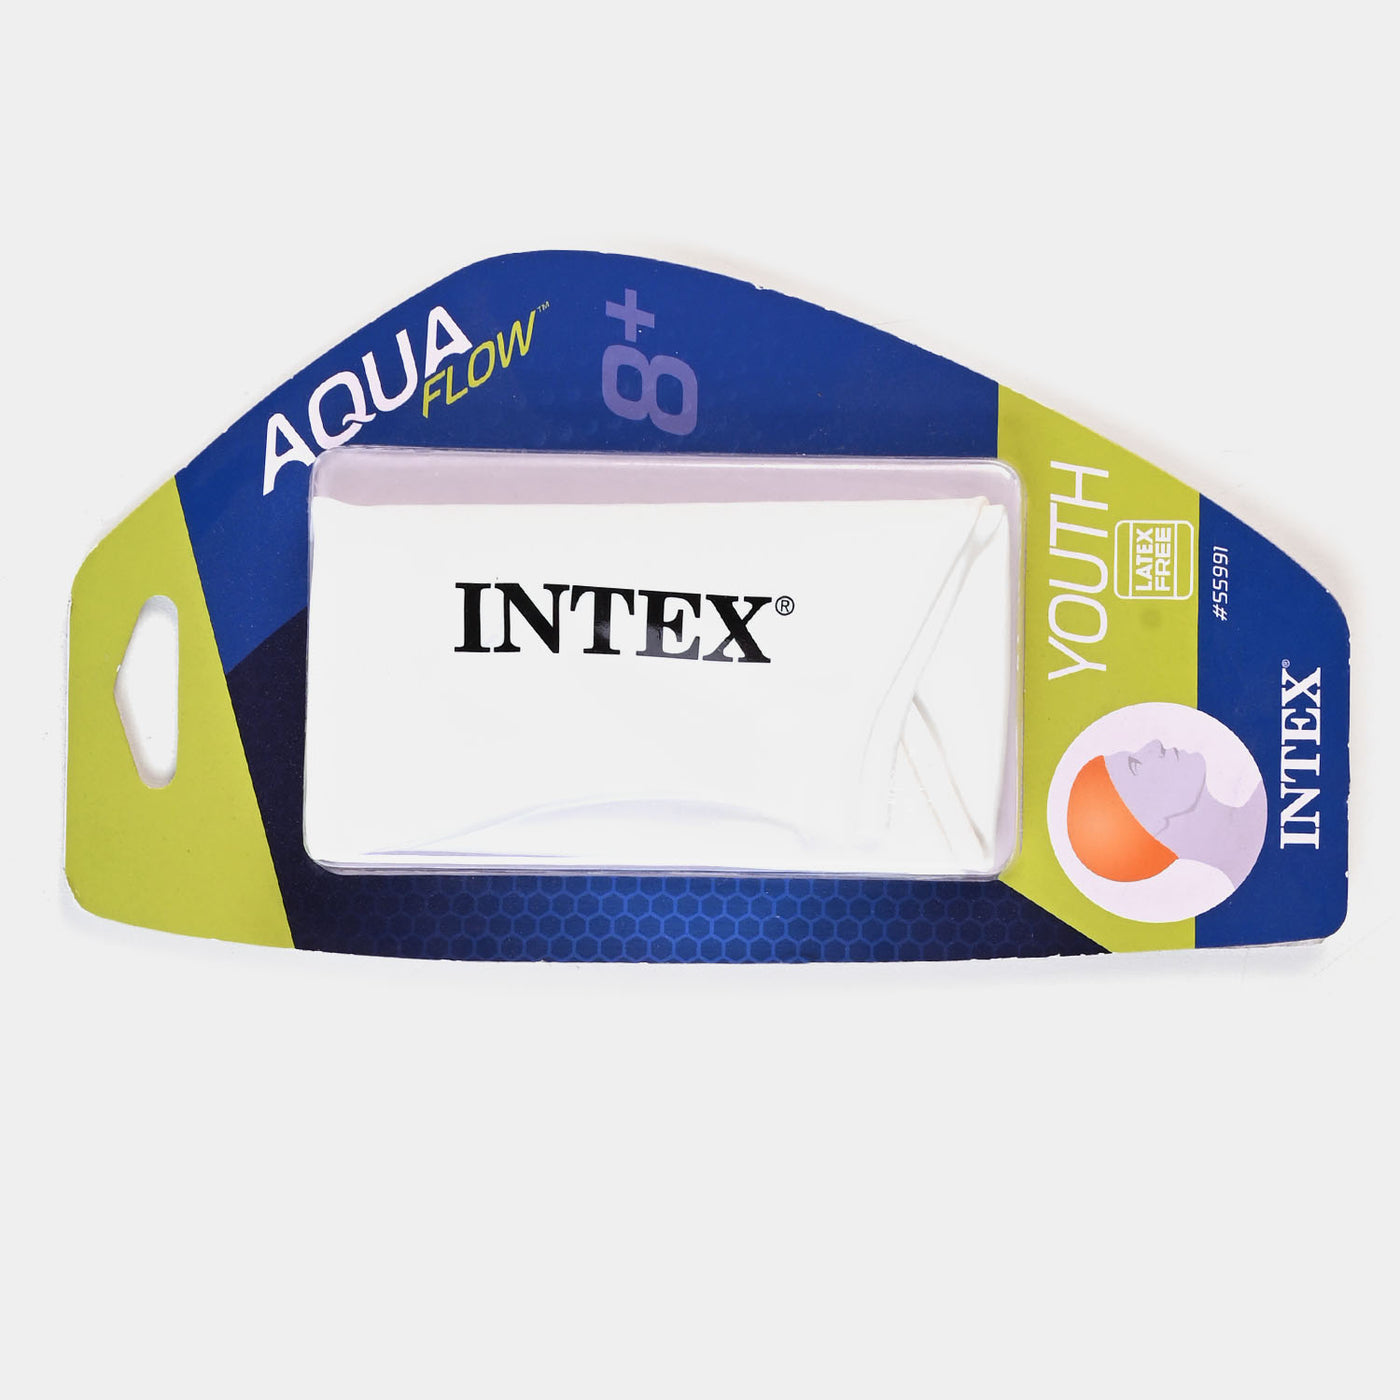 Intex Silicone Swim Cap